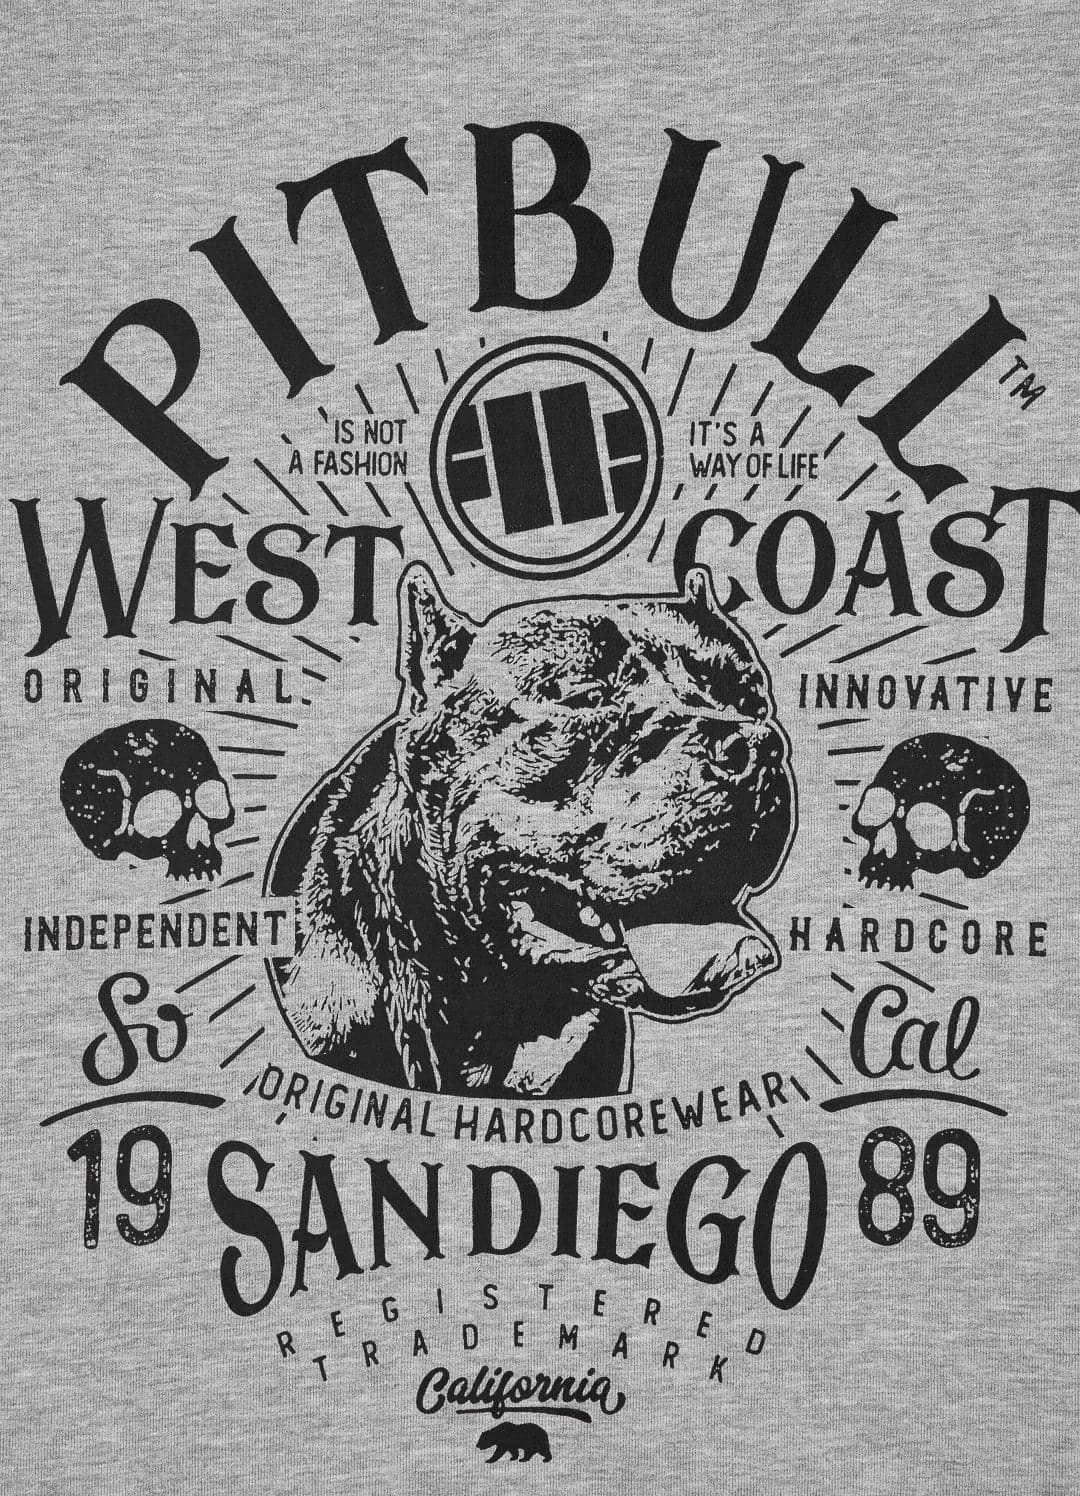 Bluza rozpinana z kapturem SAN DIEGO 89 Szara - kup z Pit Bull West Coast Oficjalny Sklep 